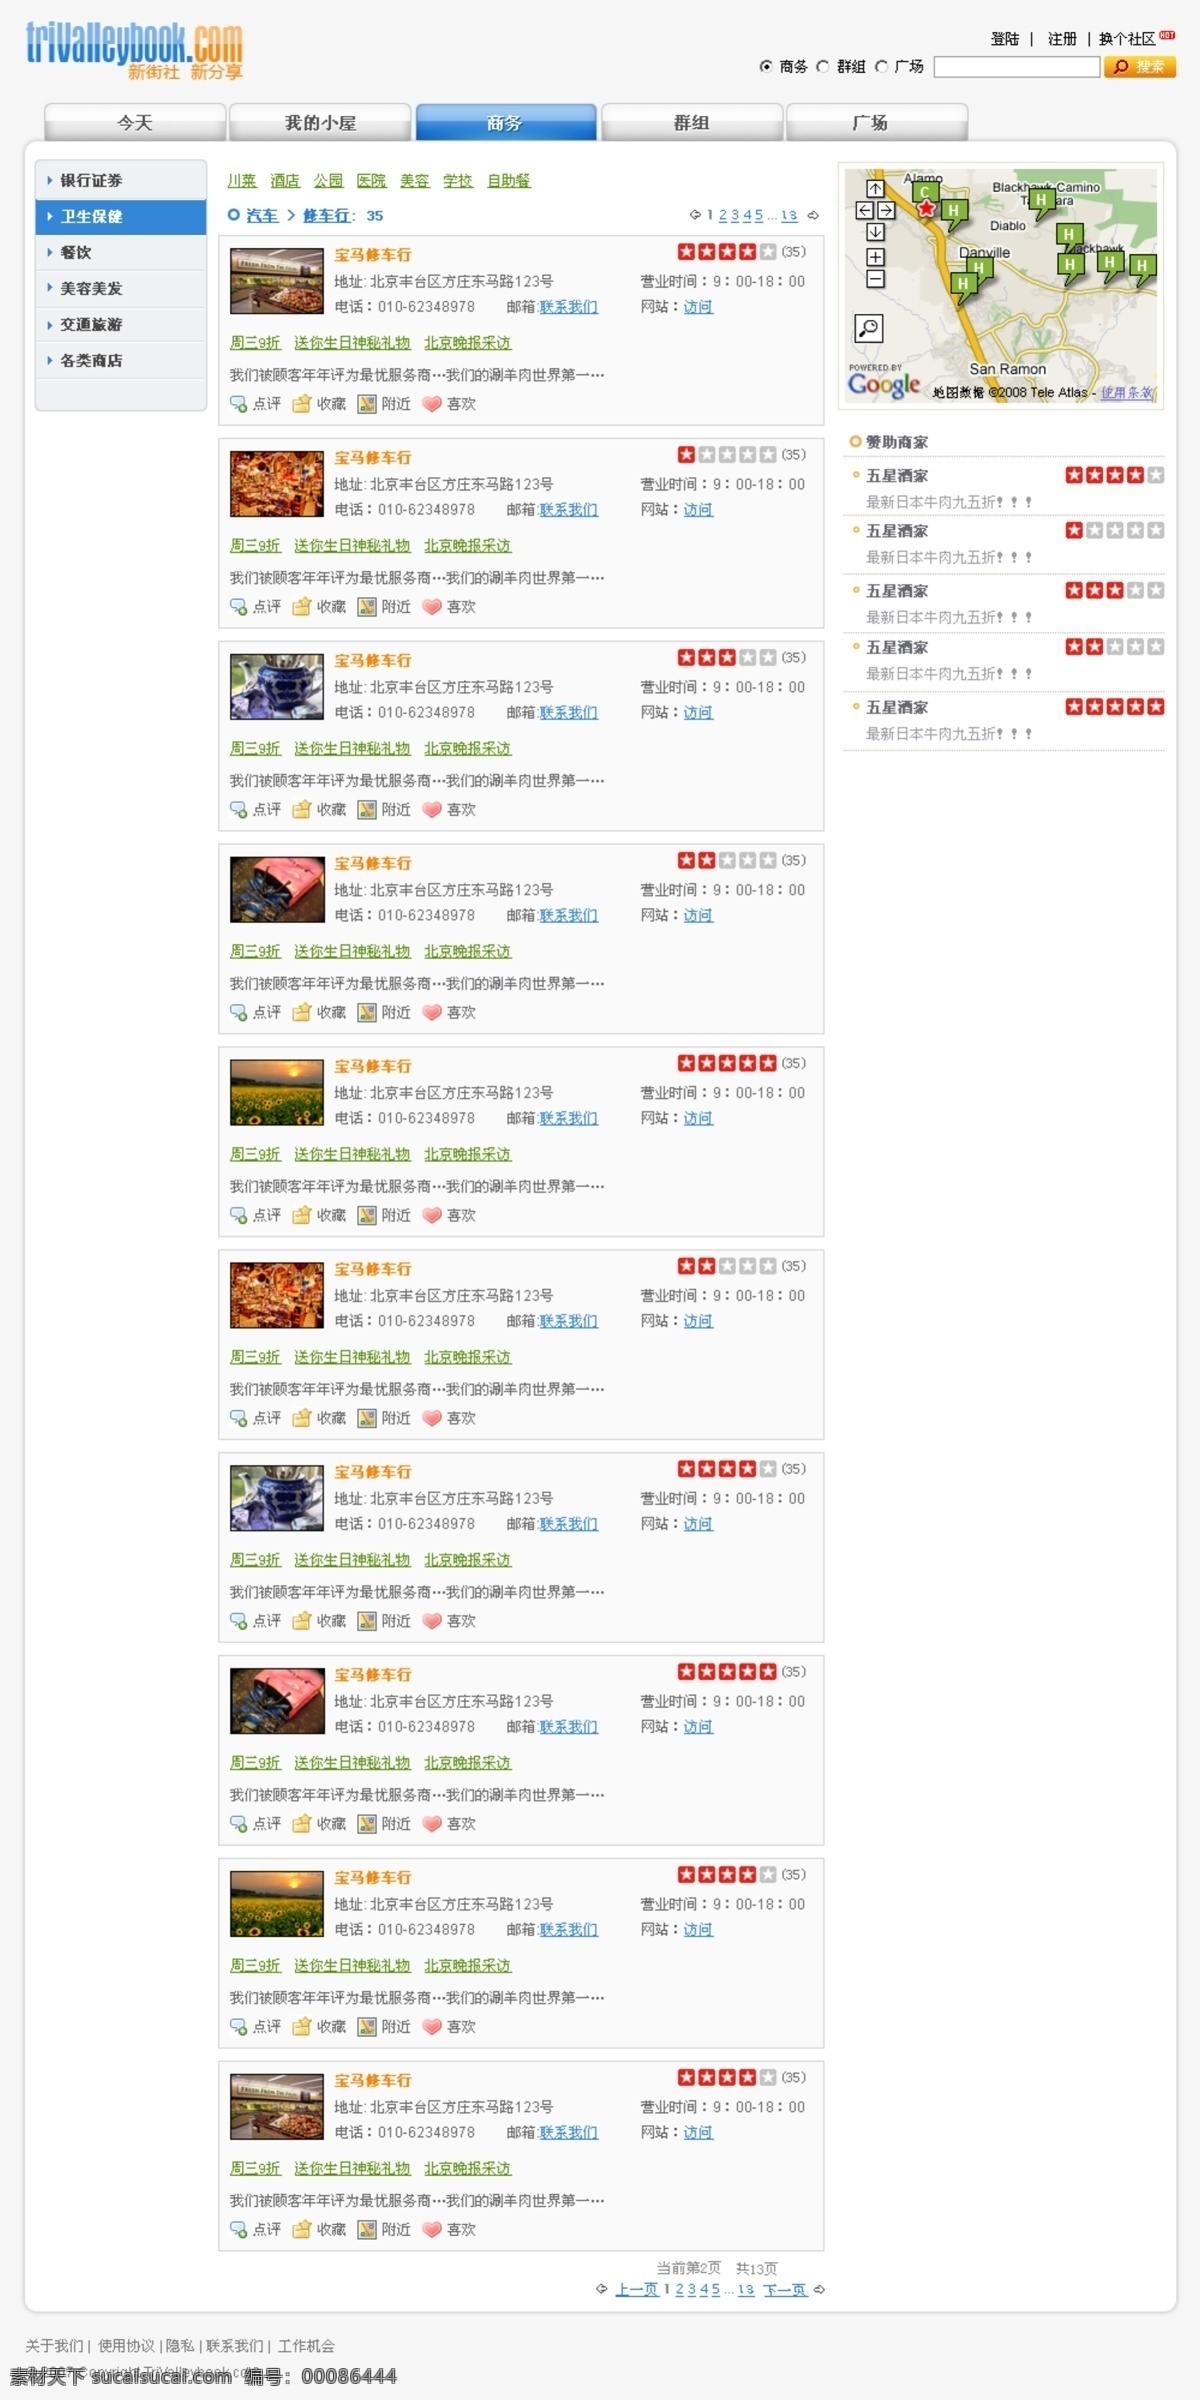 社交 网站 商务 列表 界面设计 网页模板 源文件 中文模版 社交网站 网页素材 网页界面设计